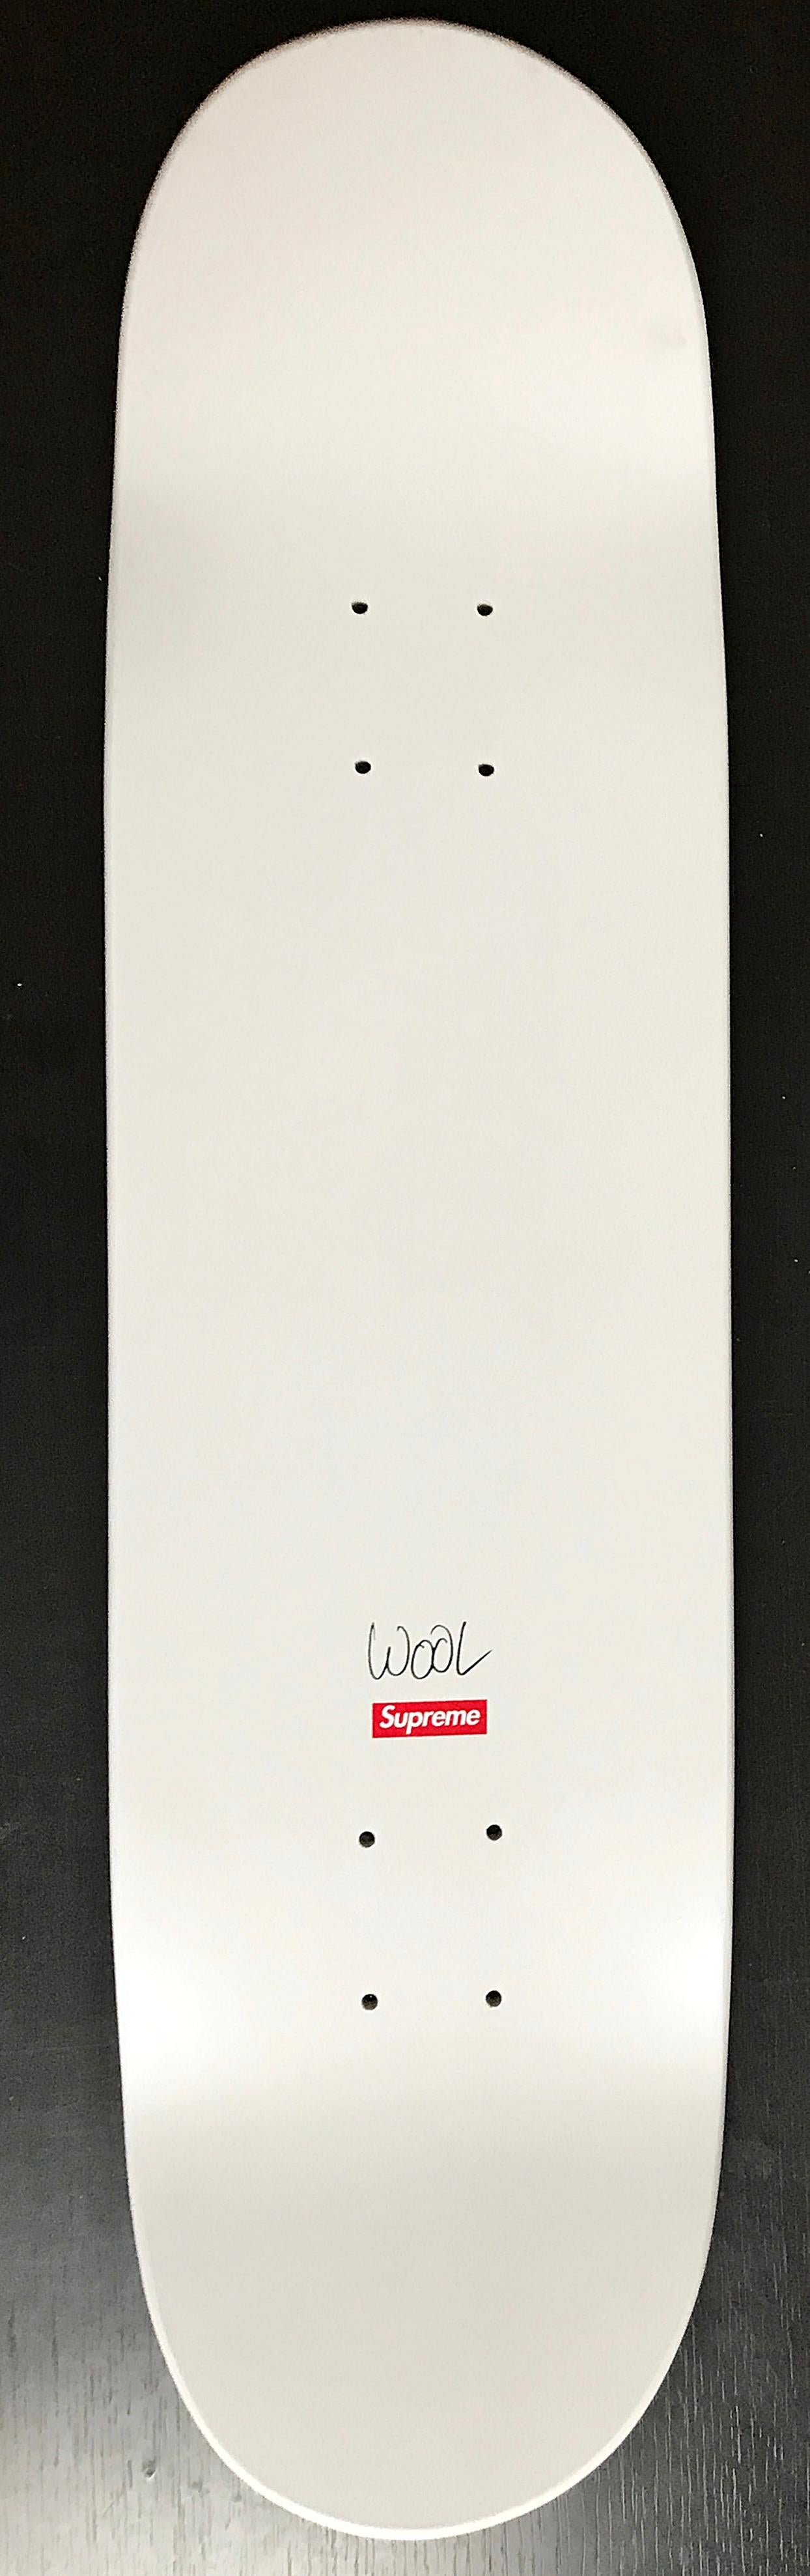 Christophe Wolle
Skate Deck, 2008  (Handgezeichnet und datiert 2017) 
Siebdruck auf Ahornholz (handsigniert von Christopher Wool, mit einer Datumsangabe von New York, 2017)
31 × 8 × 3/10 Zoll
Fett signiert und datiert 2017 mit der Datumsgrenze 